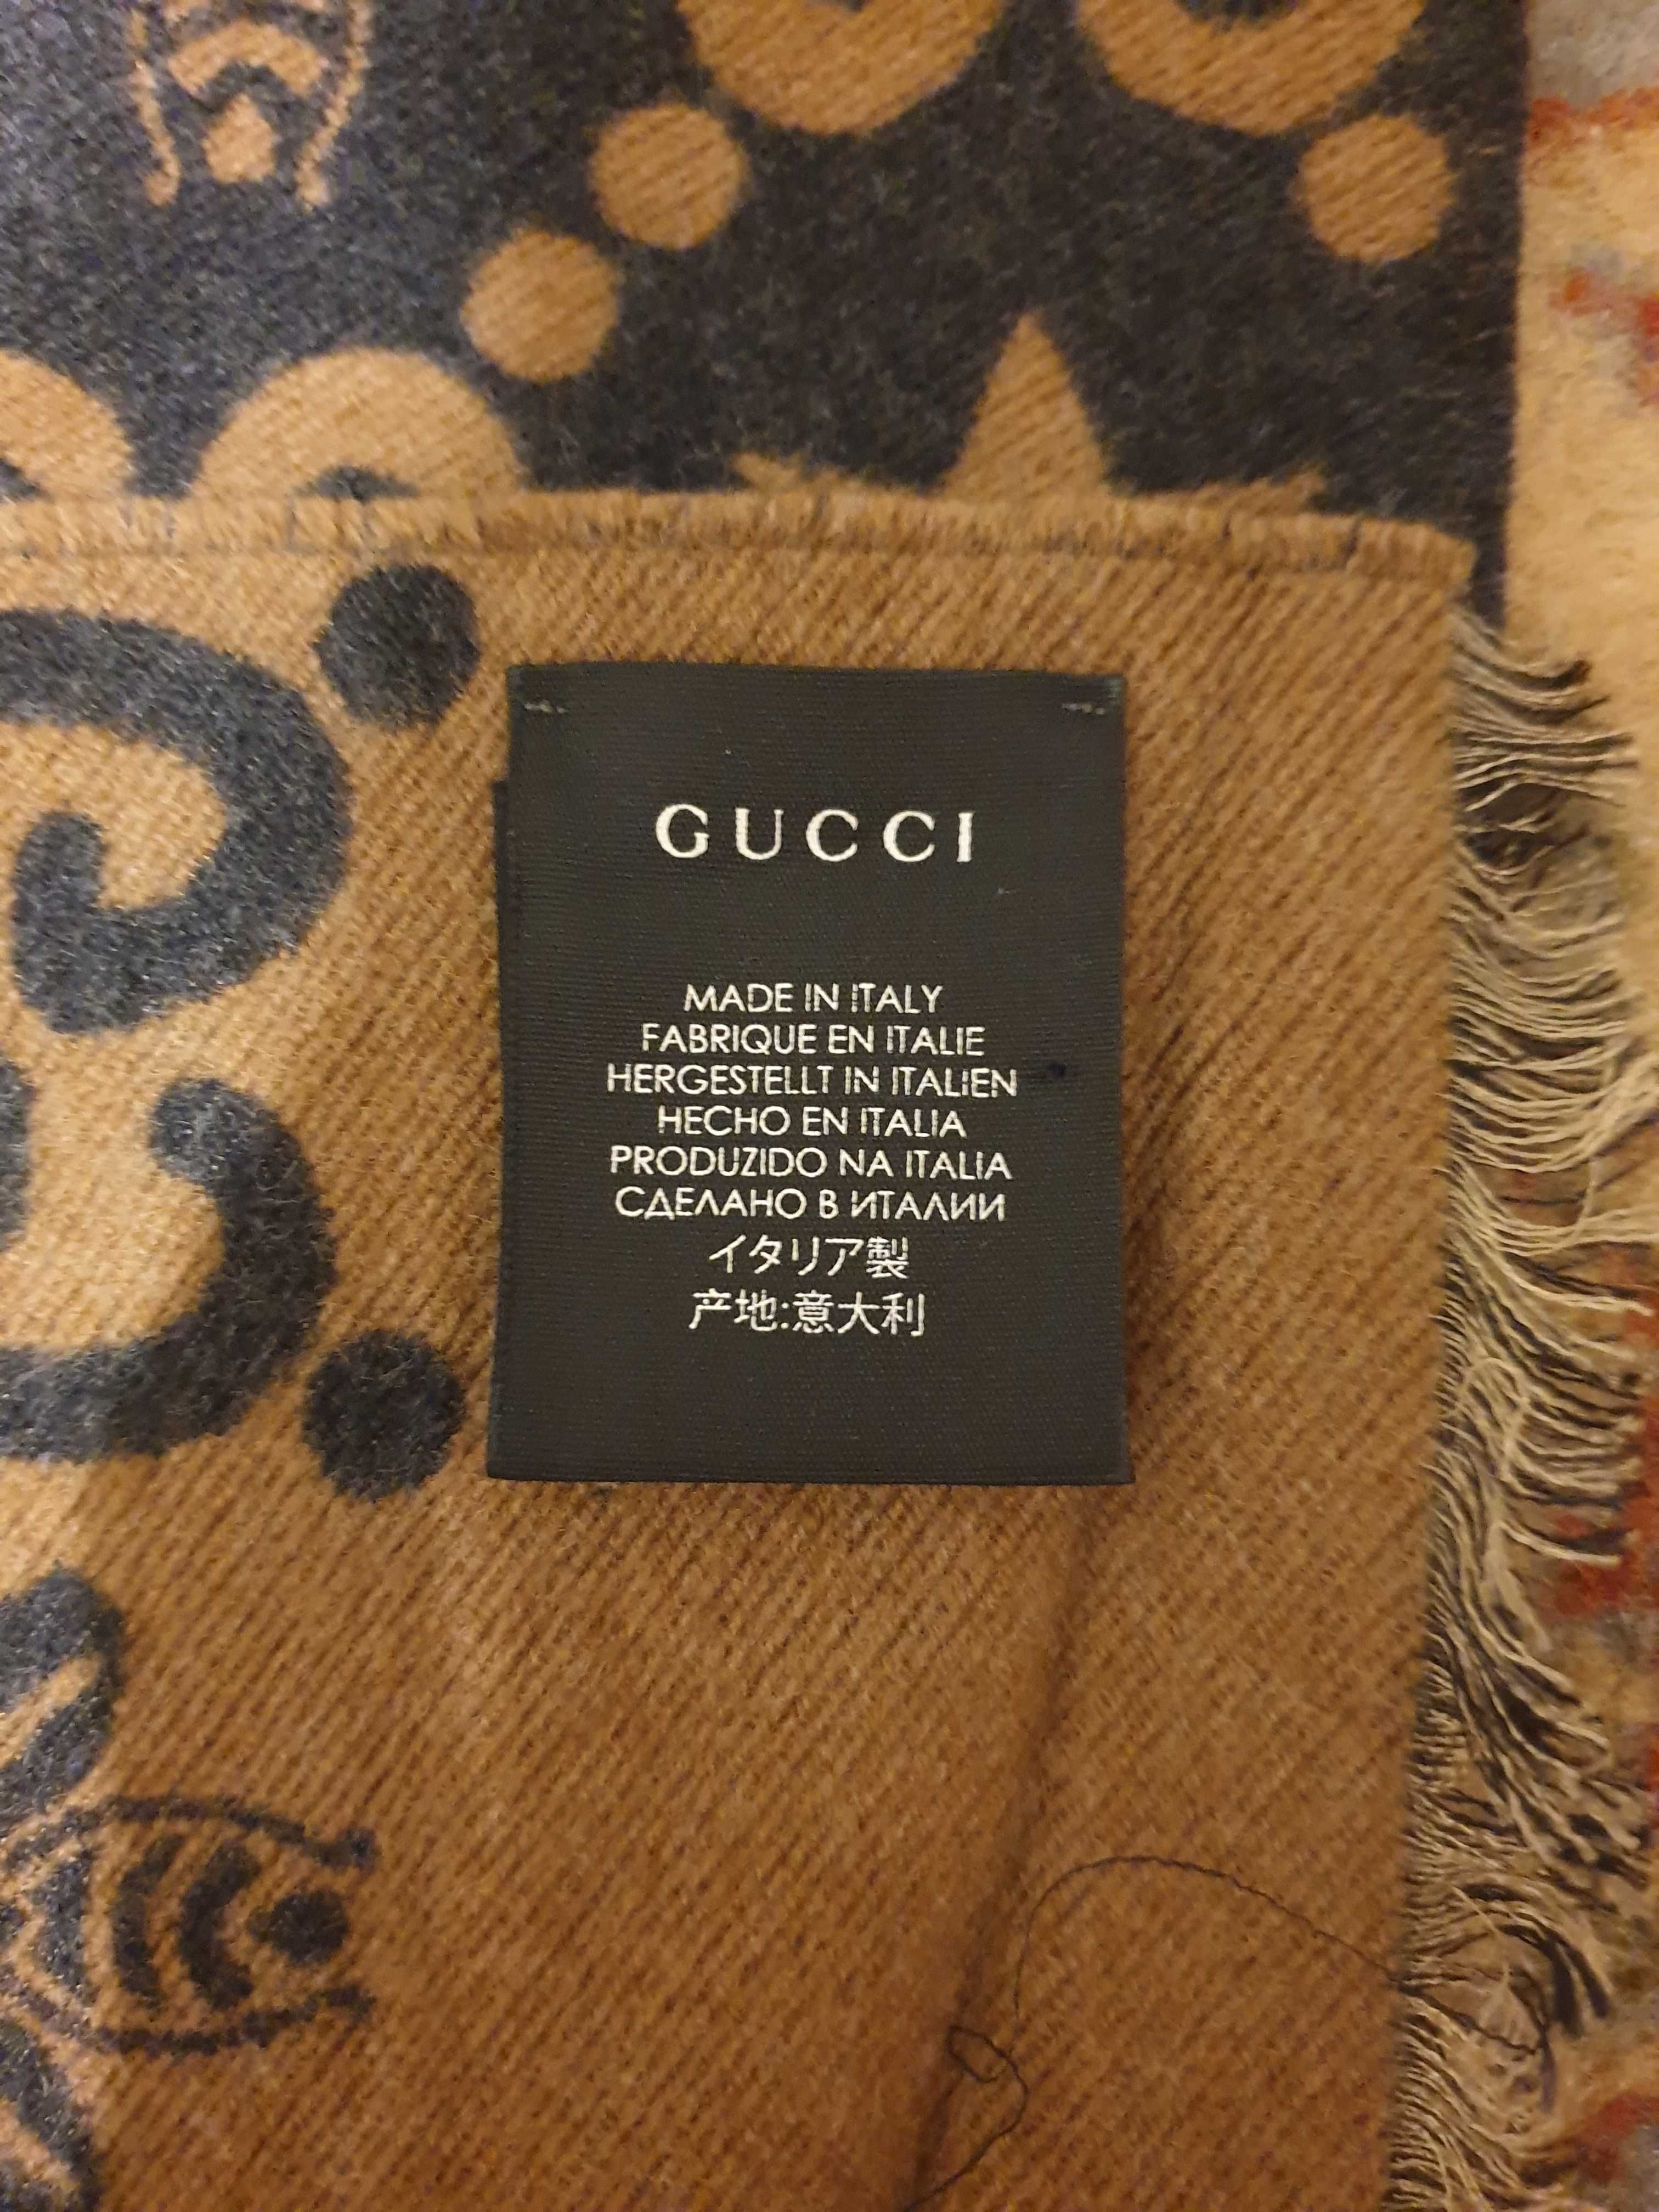 Esarfa originala de la Gucci unisex